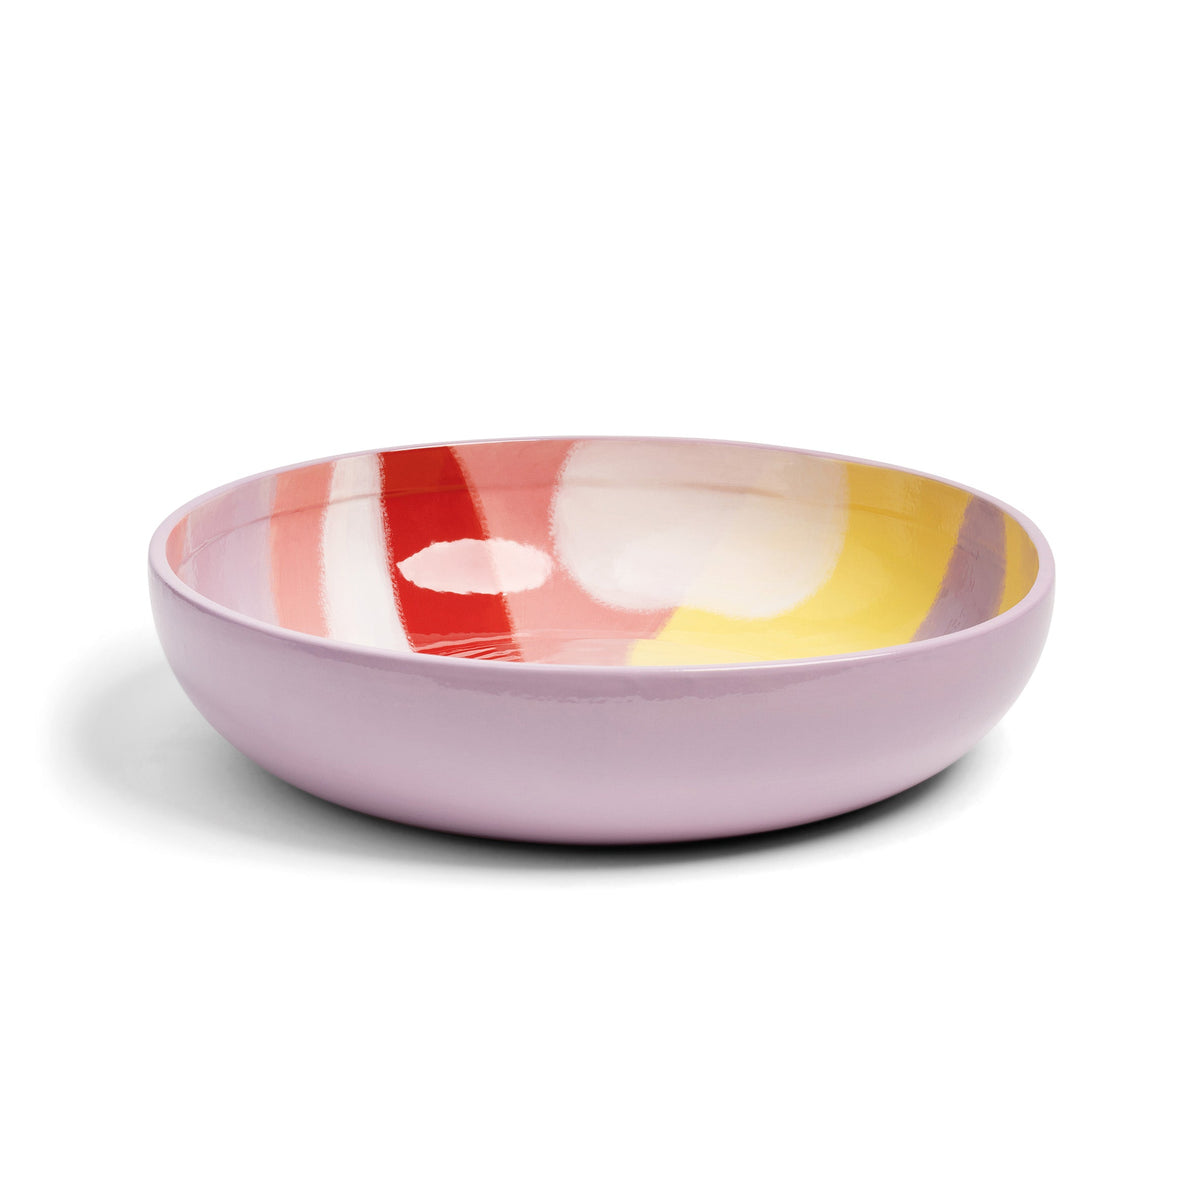 Salatskål i porcelæn · lyserød/rød/gul